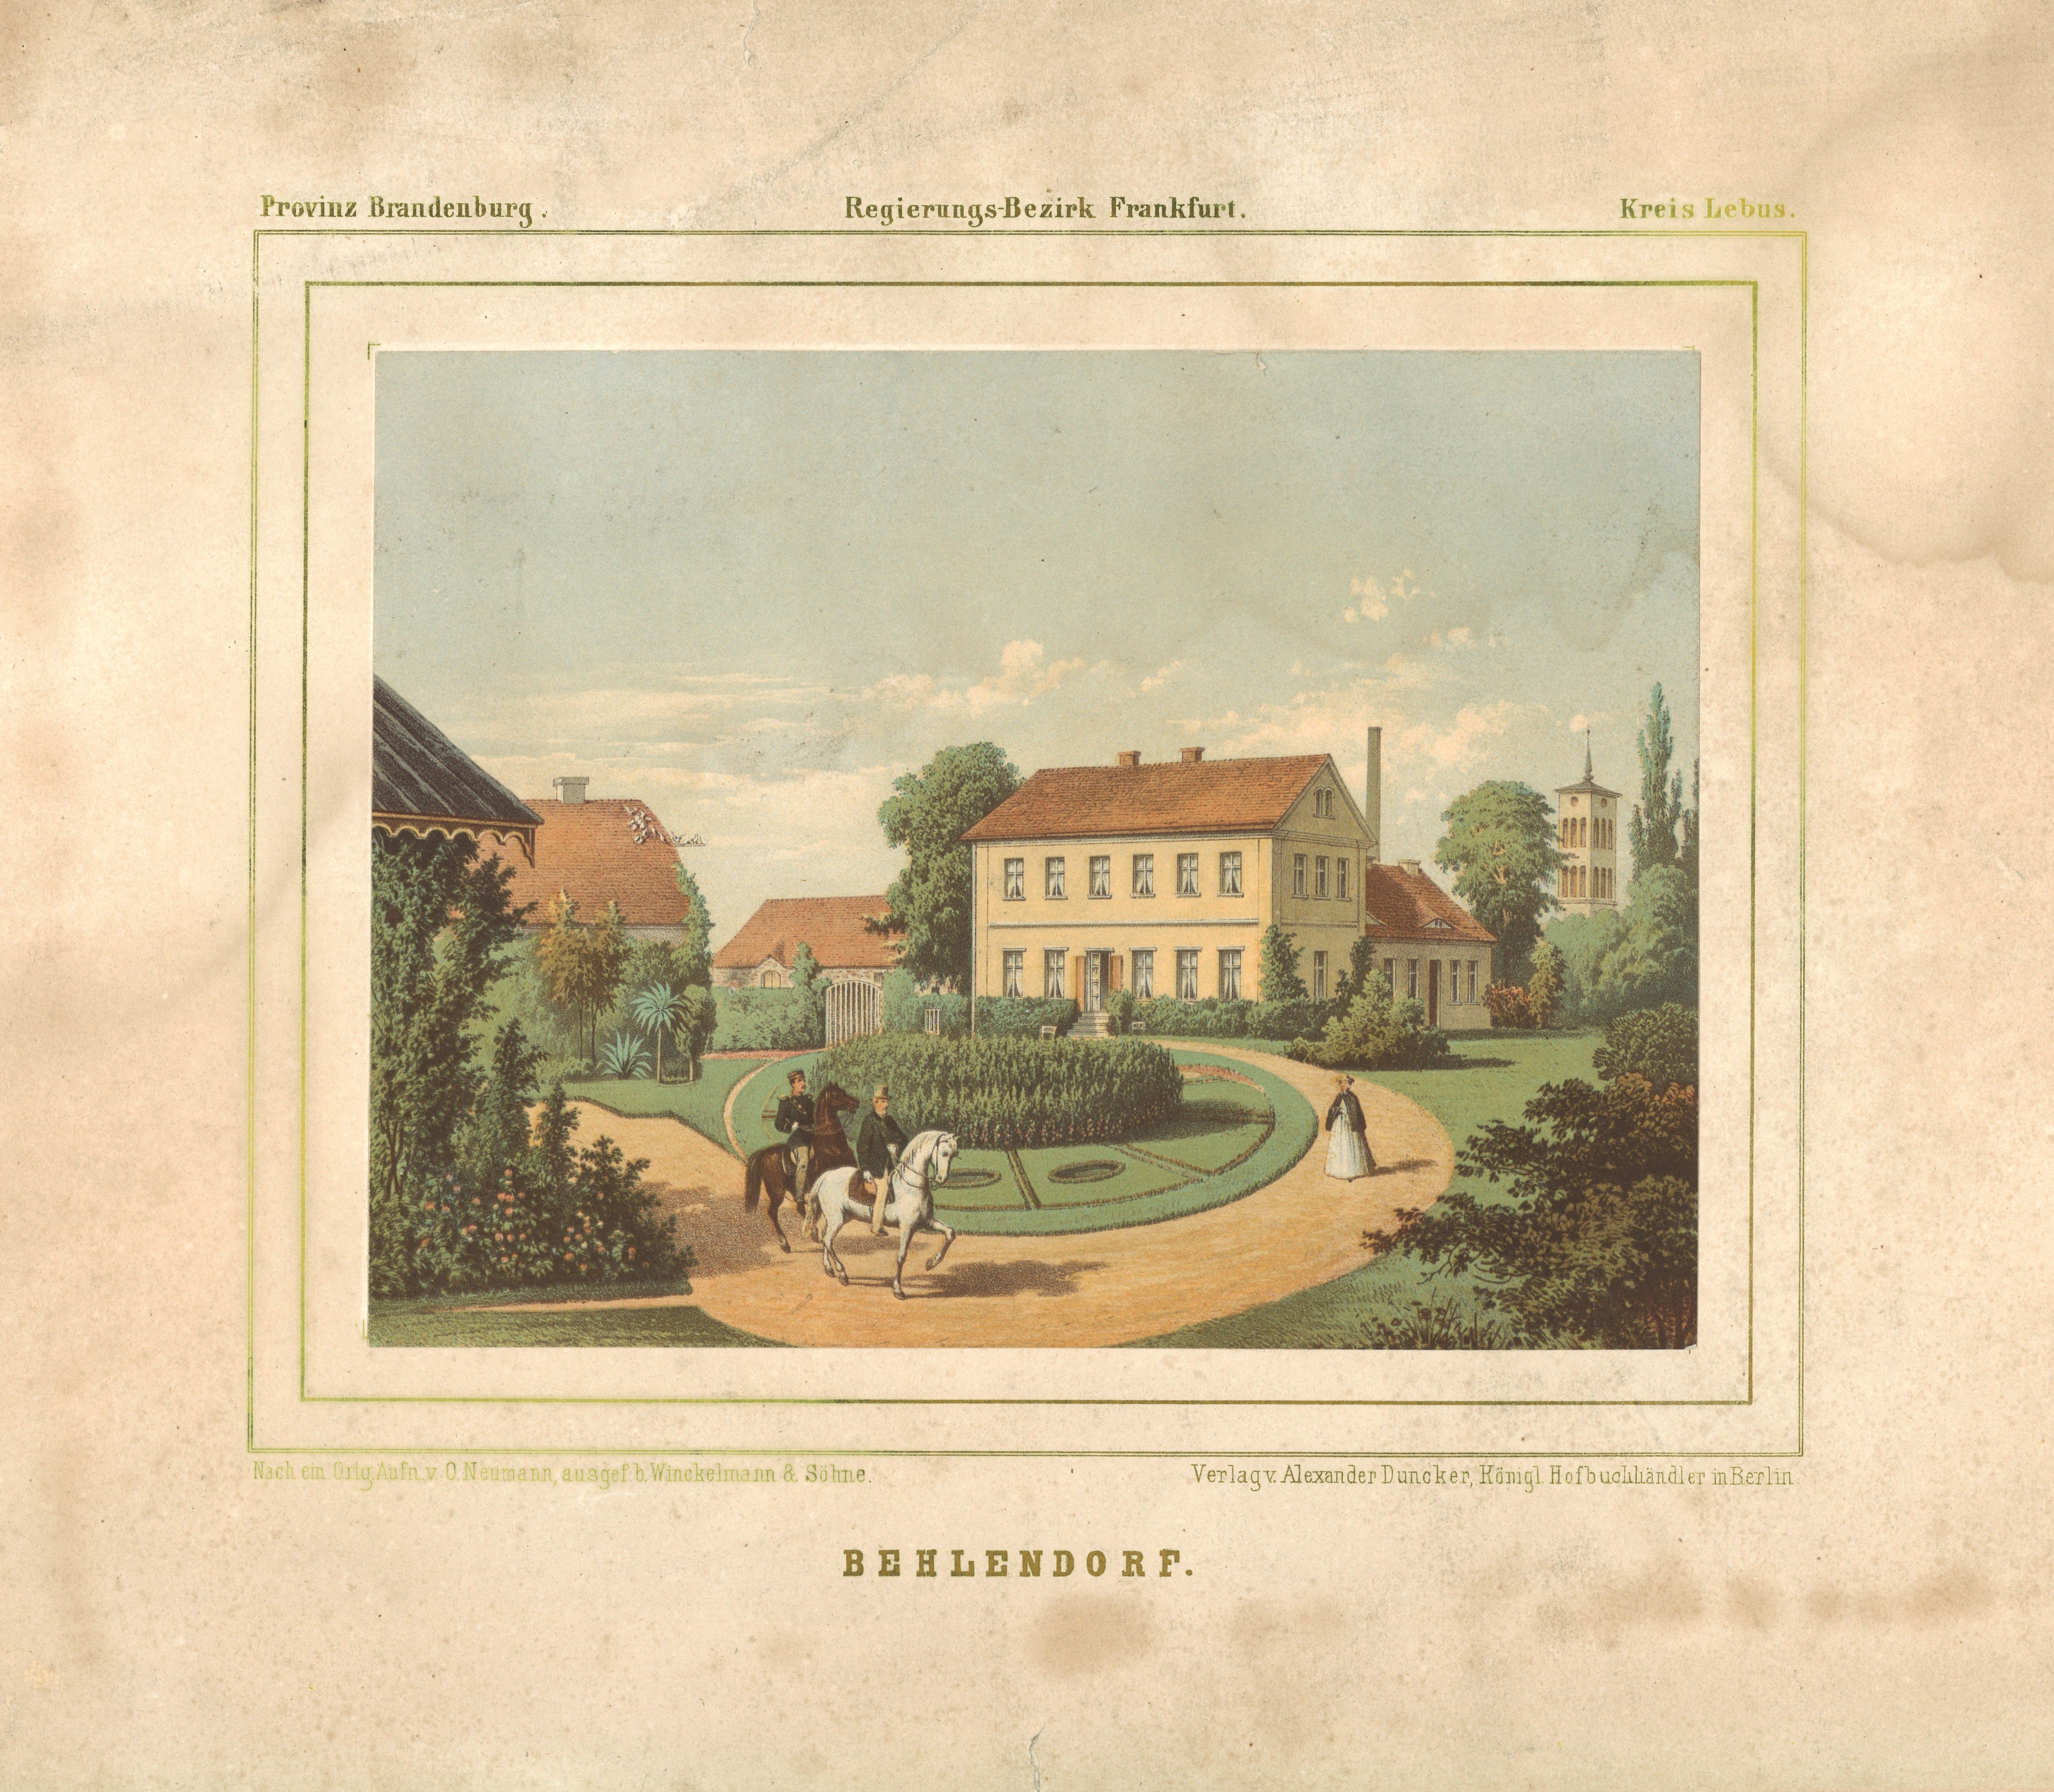 Behlendorf (Kr. Lebus): Herrenhaus (Landesgeschichtliche Vereinigung für die Mark Brandenburg e.V., Archiv CC BY)